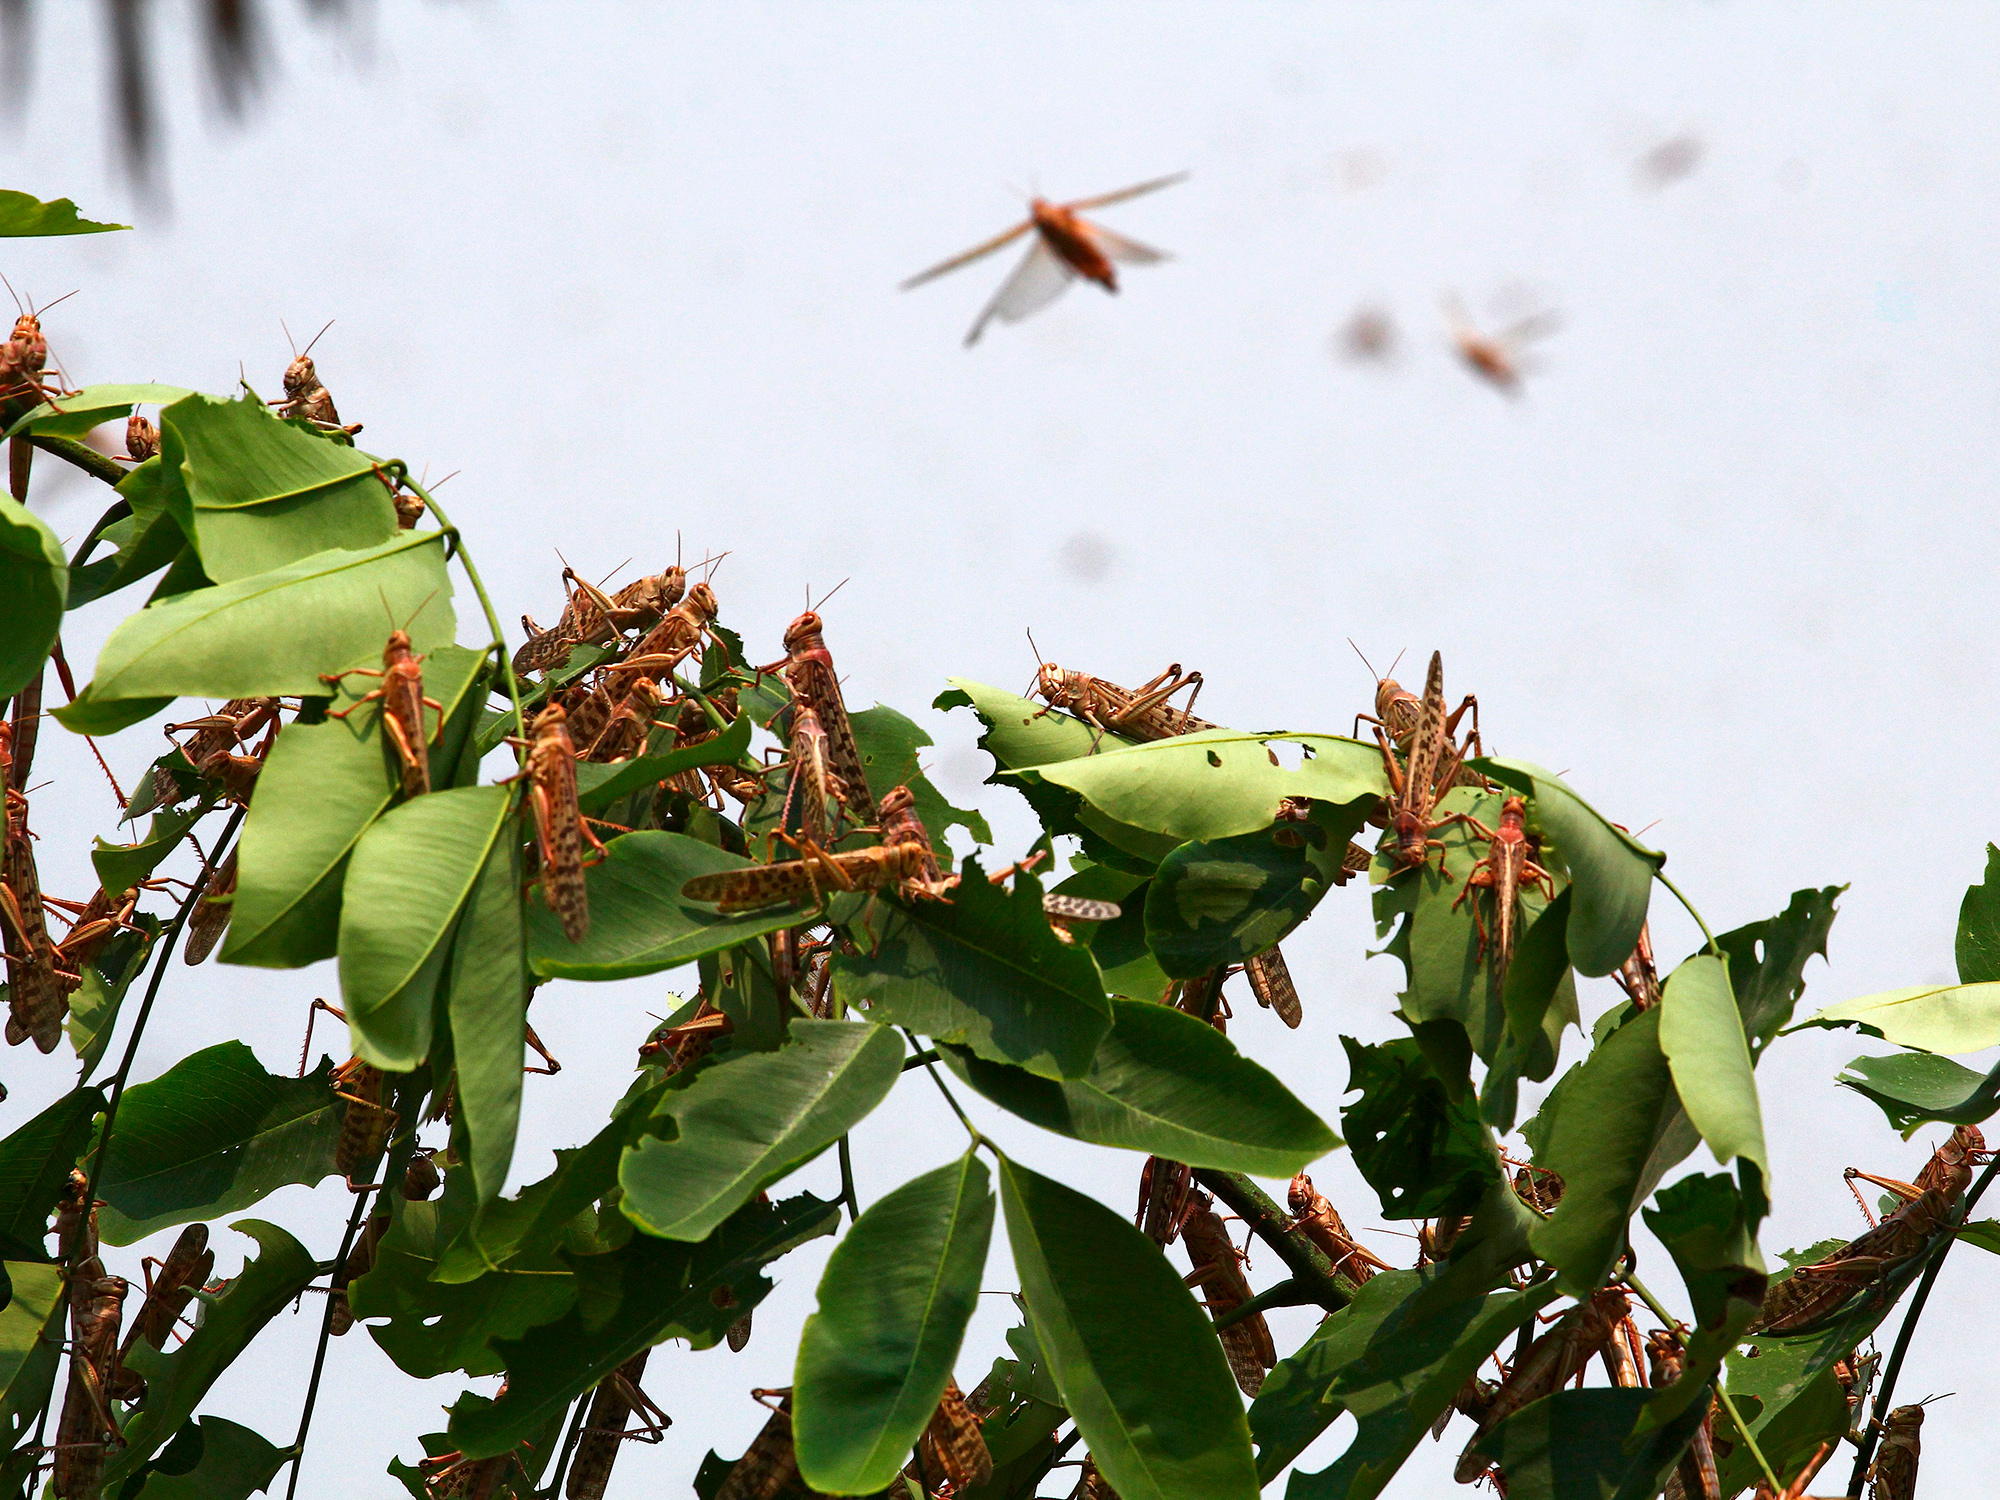 Locust Swarm Enters India's Sugar Cane Region - Bloomberg